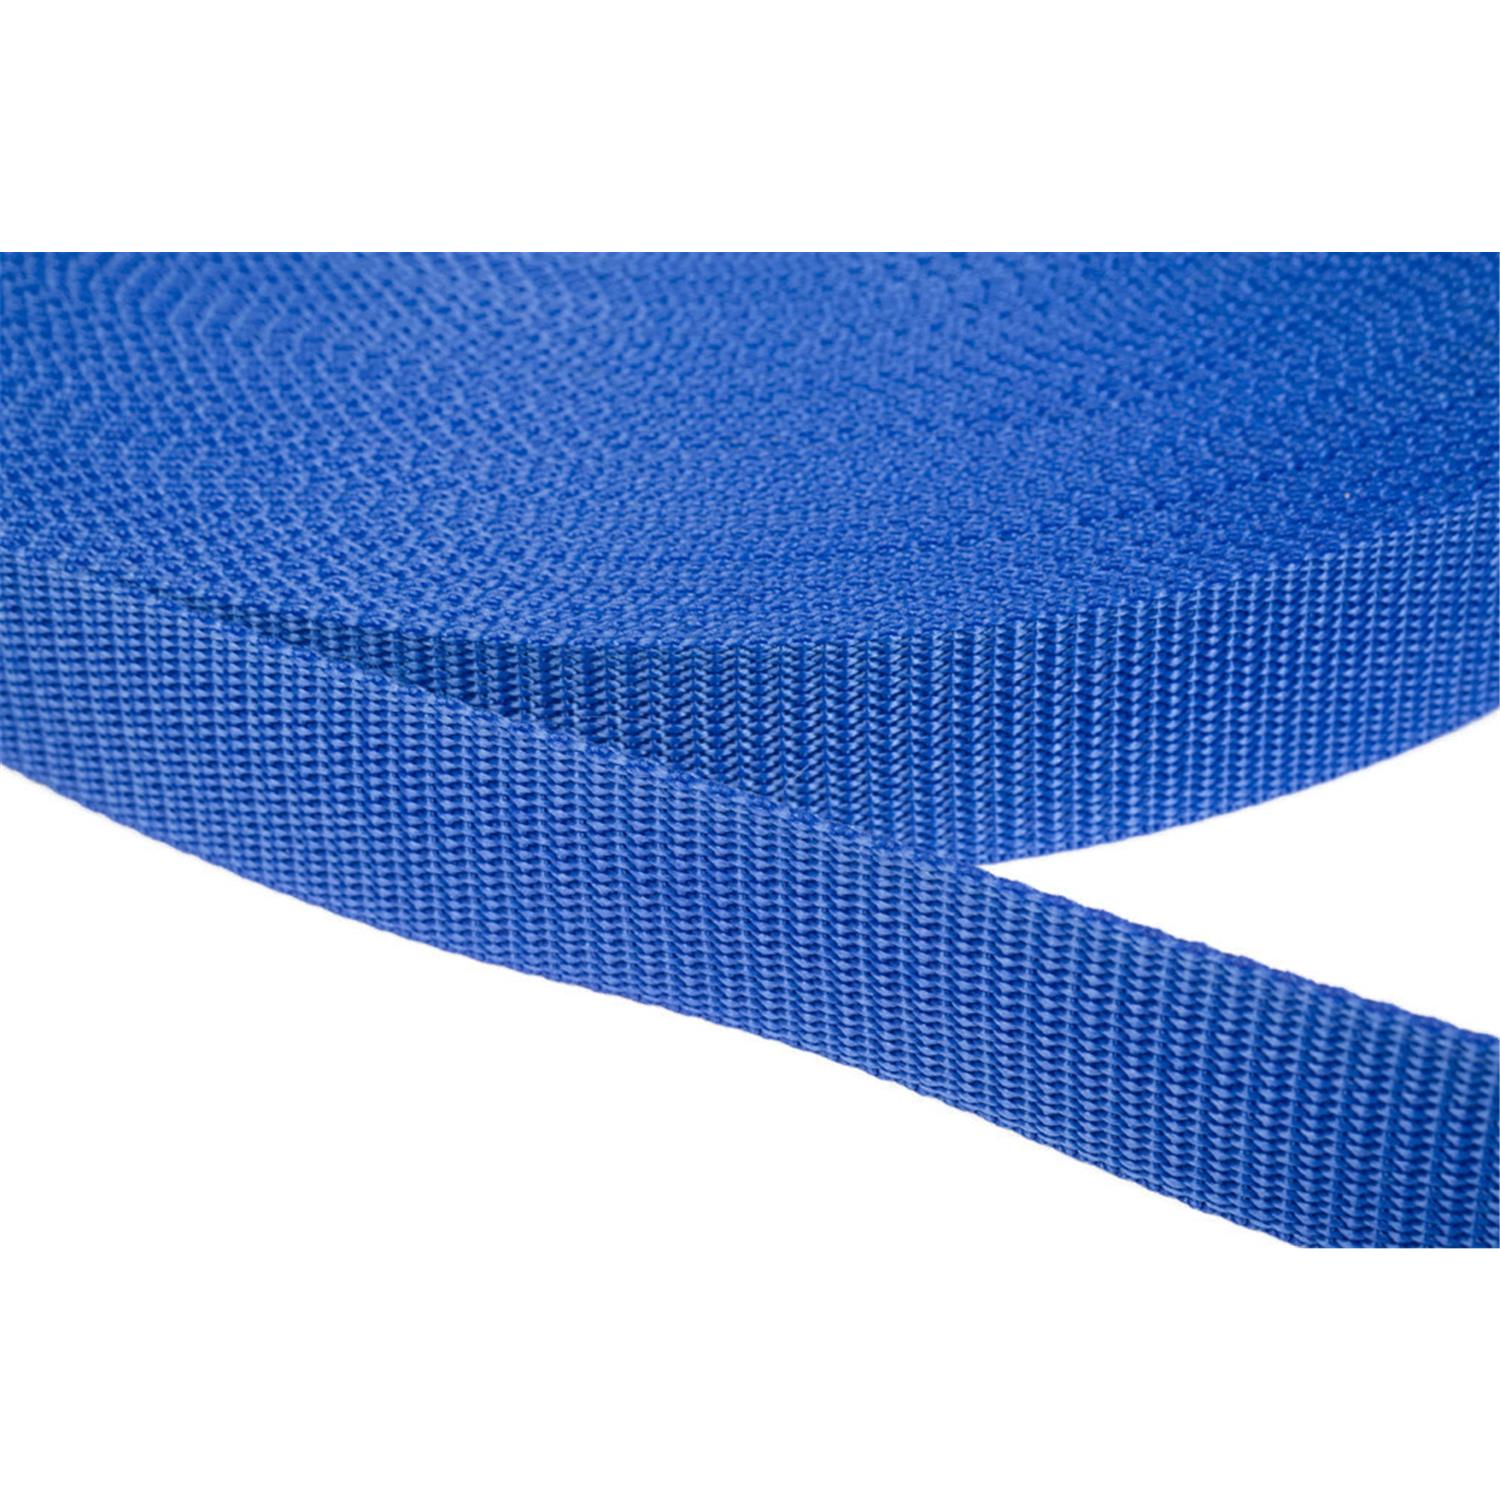 Gurtband 50mm breit aus Polypropylen in 41 Farben 26 - royalblau 12 Meter